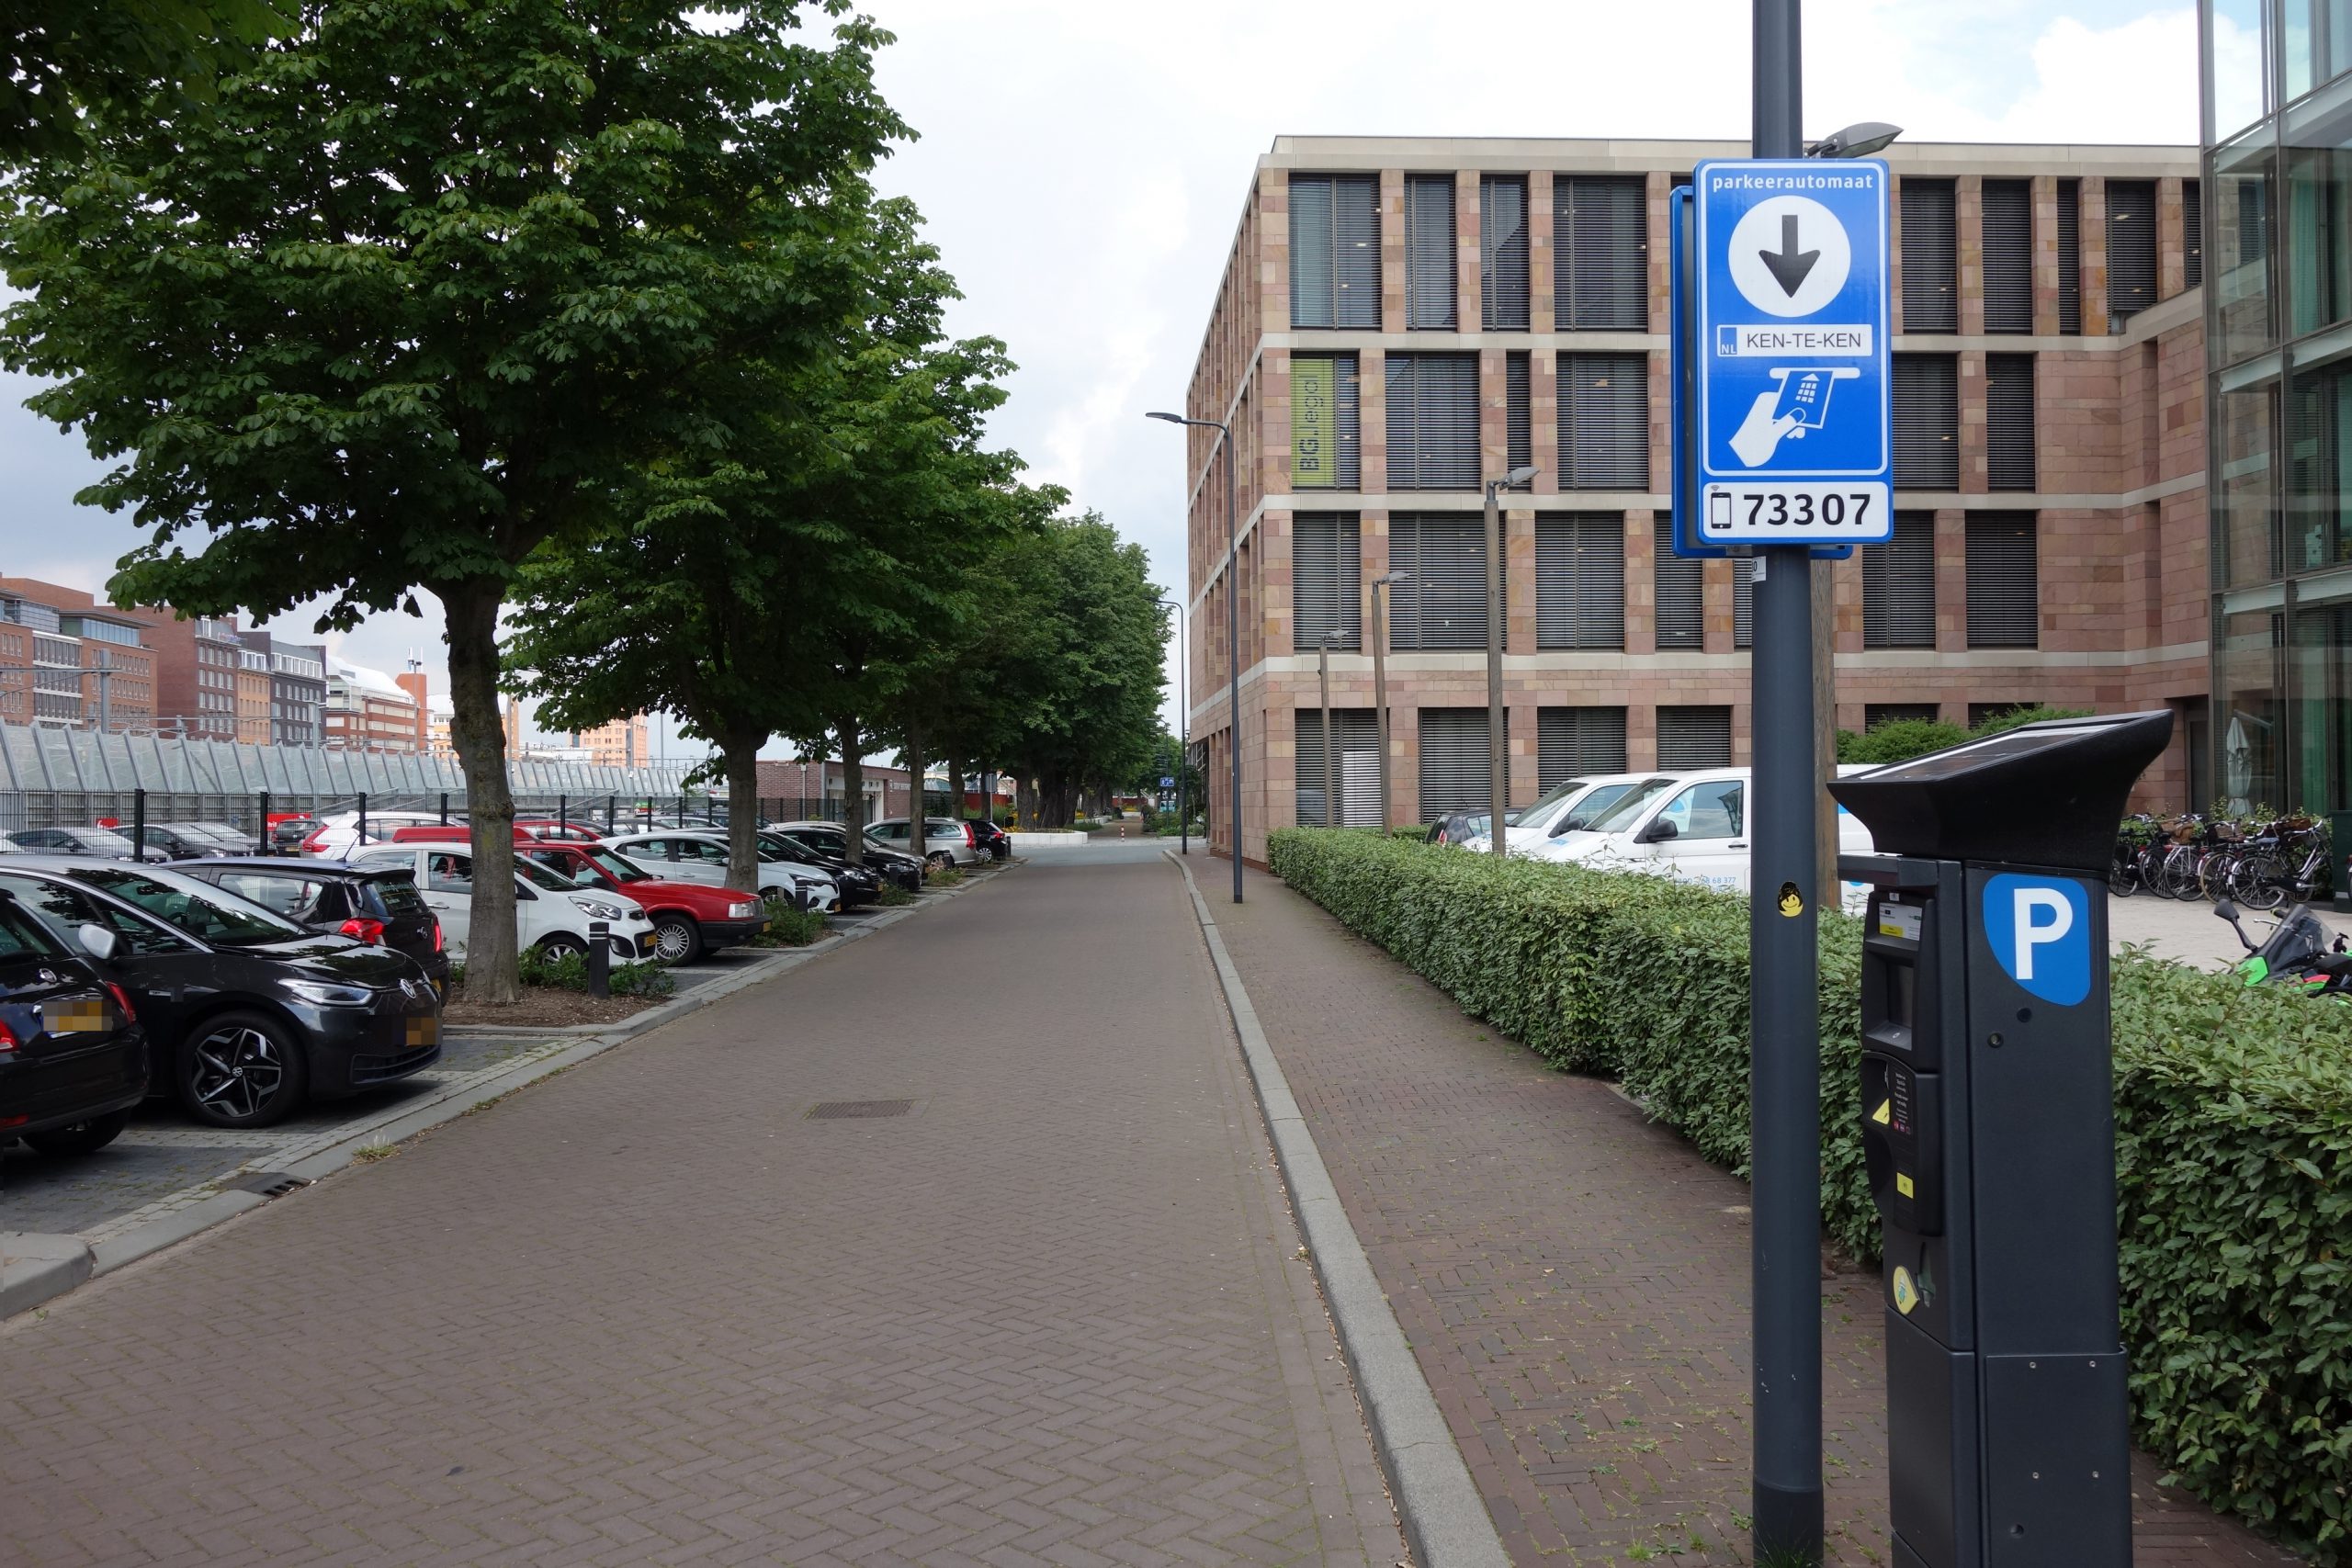 Digitalisering parkeerketen ’s-Hertogenbosch